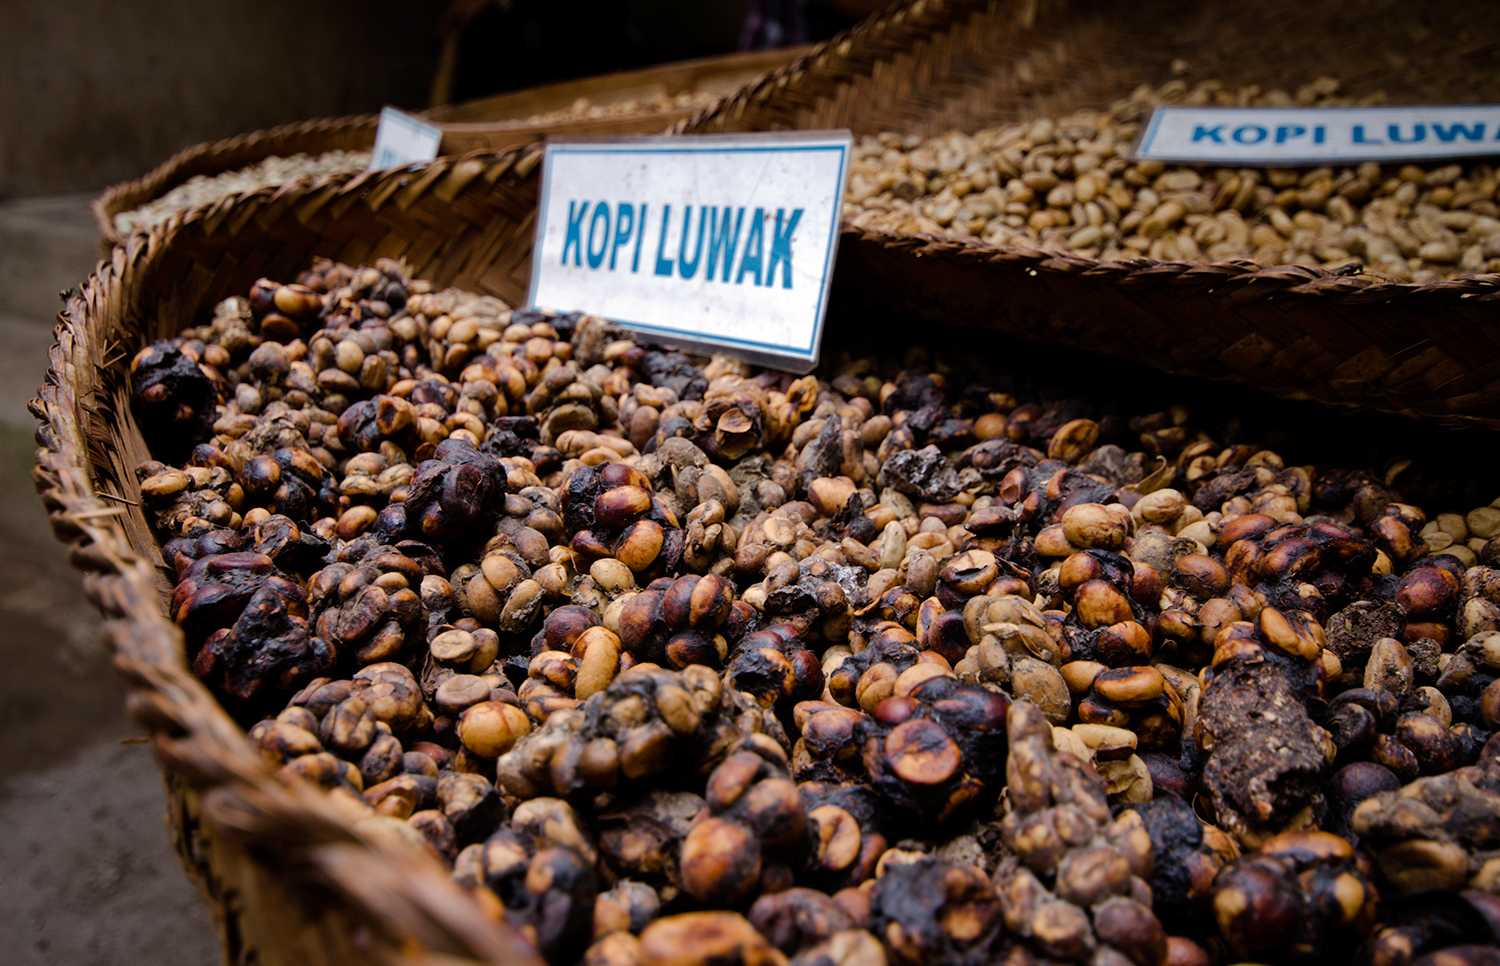 Копи Лювак. Kopi Luwak кофе. Сорт кофе Лювак. Самый дорогой кофе в мире копи Лювак. Кошки едят кофейные зерна